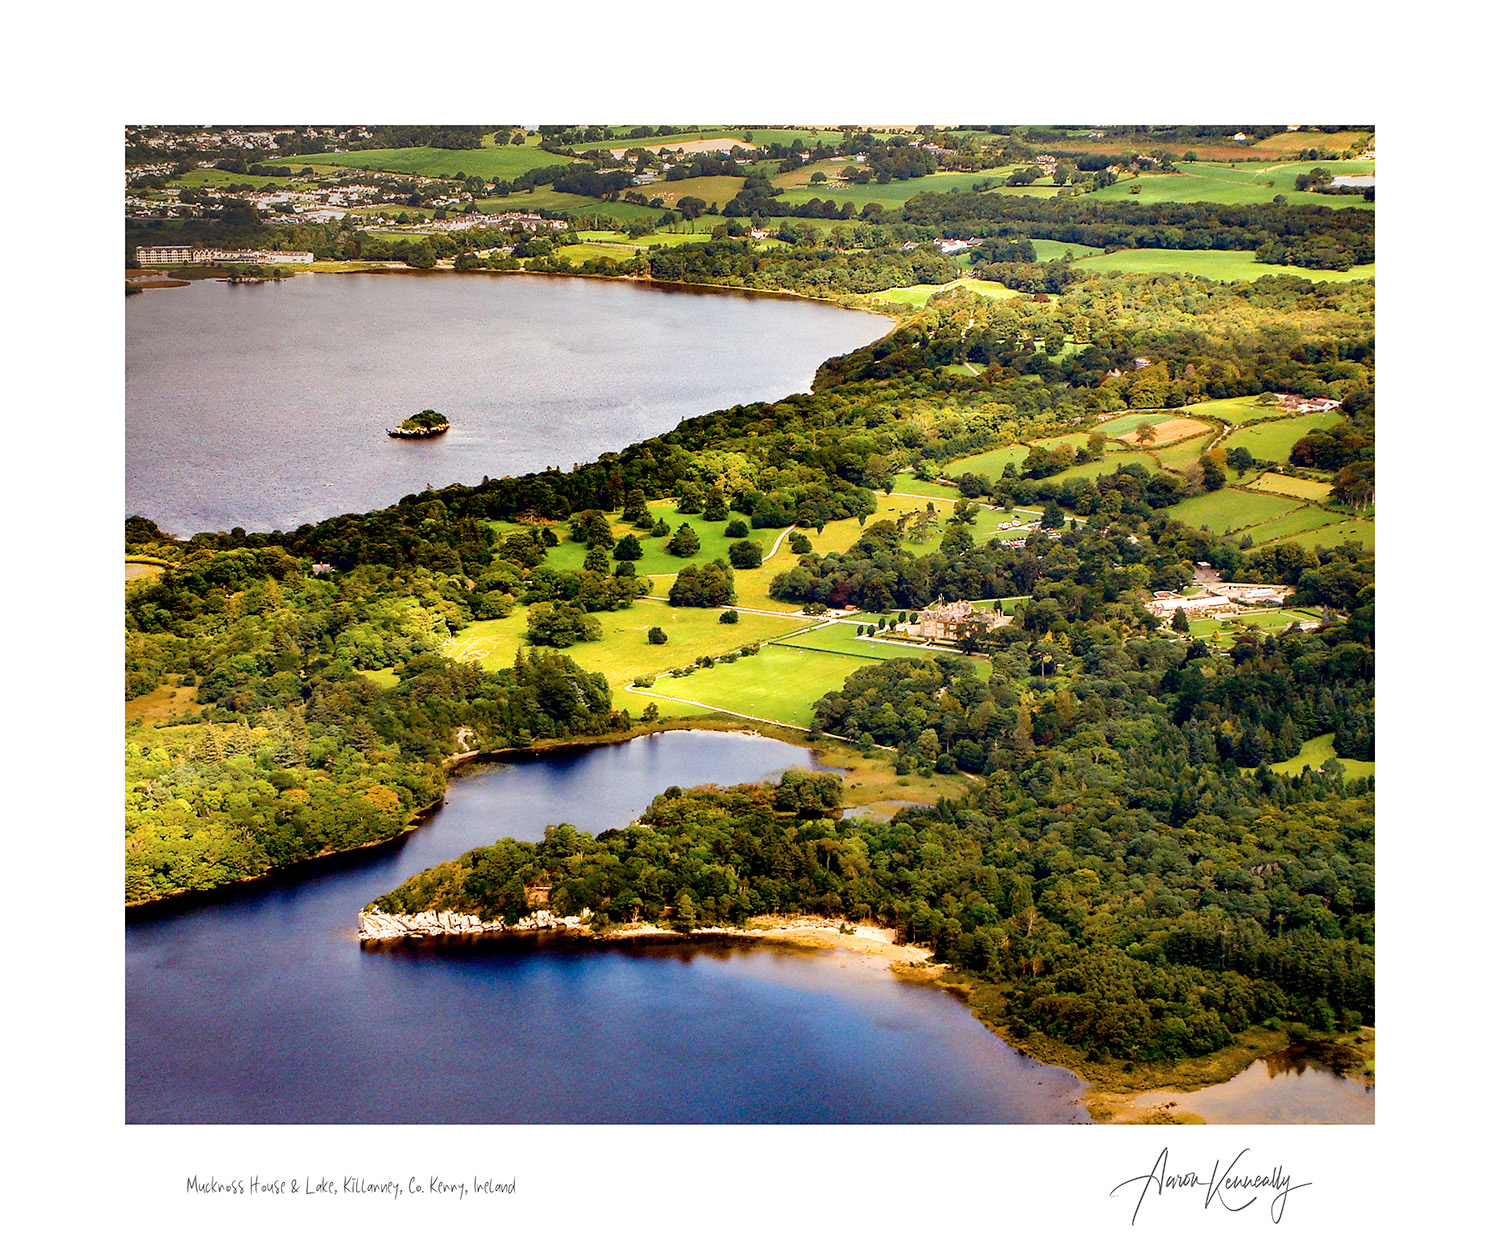 Muckross House & Lake, Killarney National Park, Co. Kerry